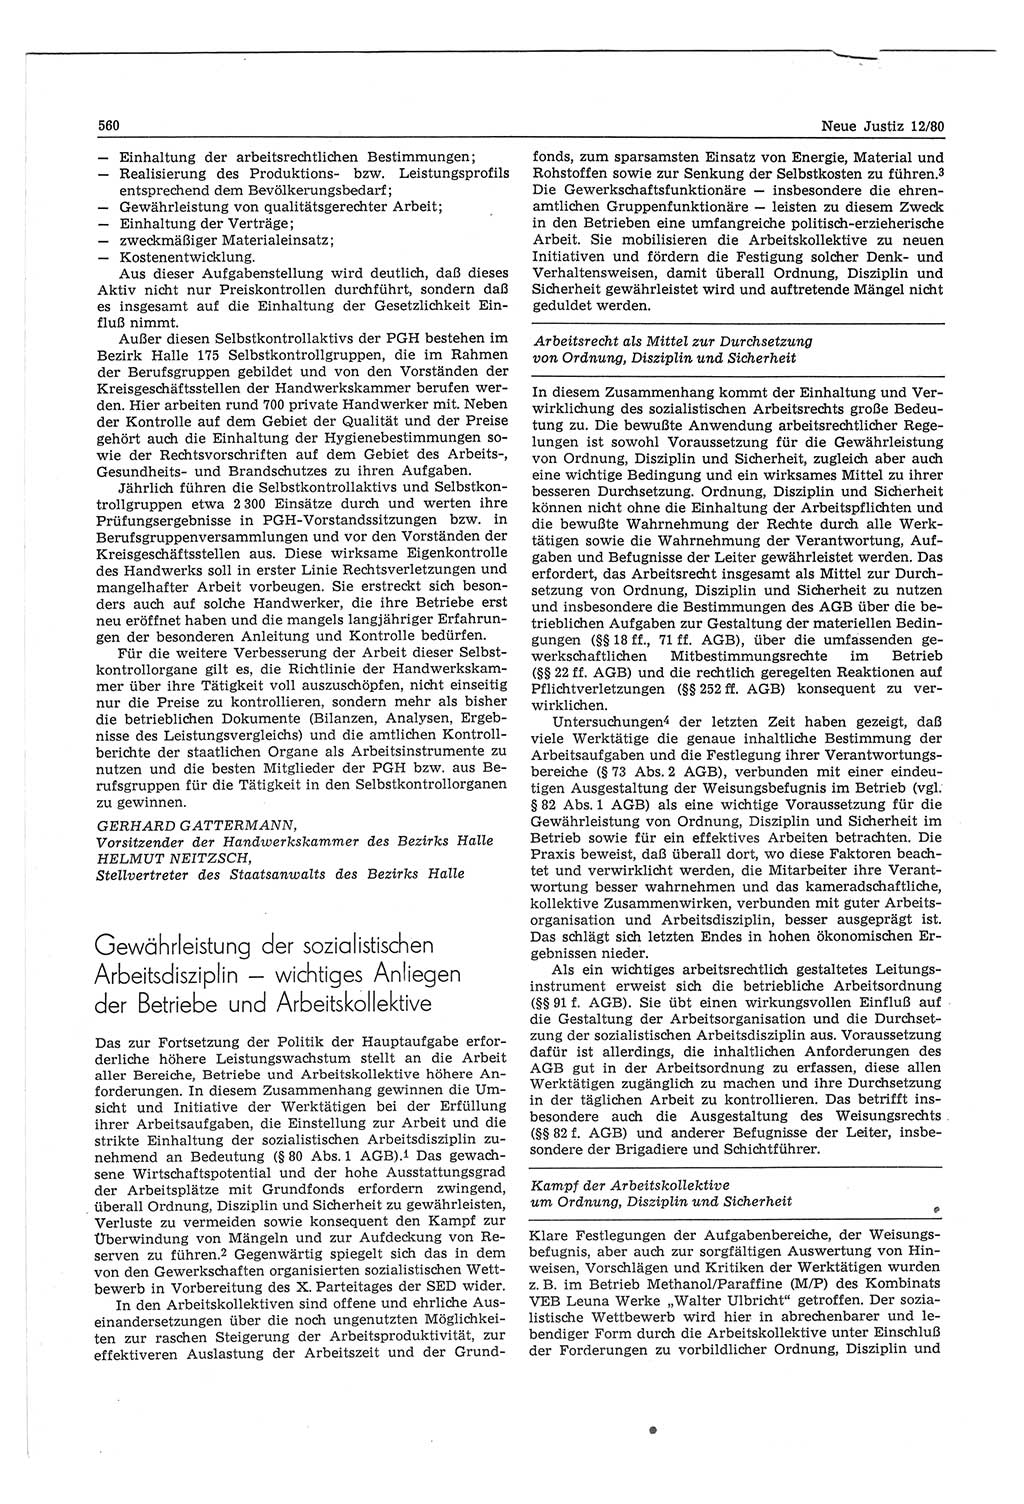 Neue Justiz (NJ), Zeitschrift für sozialistisches Recht und Gesetzlichkeit [Deutsche Demokratische Republik (DDR)], 34. Jahrgang 1980, Seite 560 (NJ DDR 1980, S. 560)